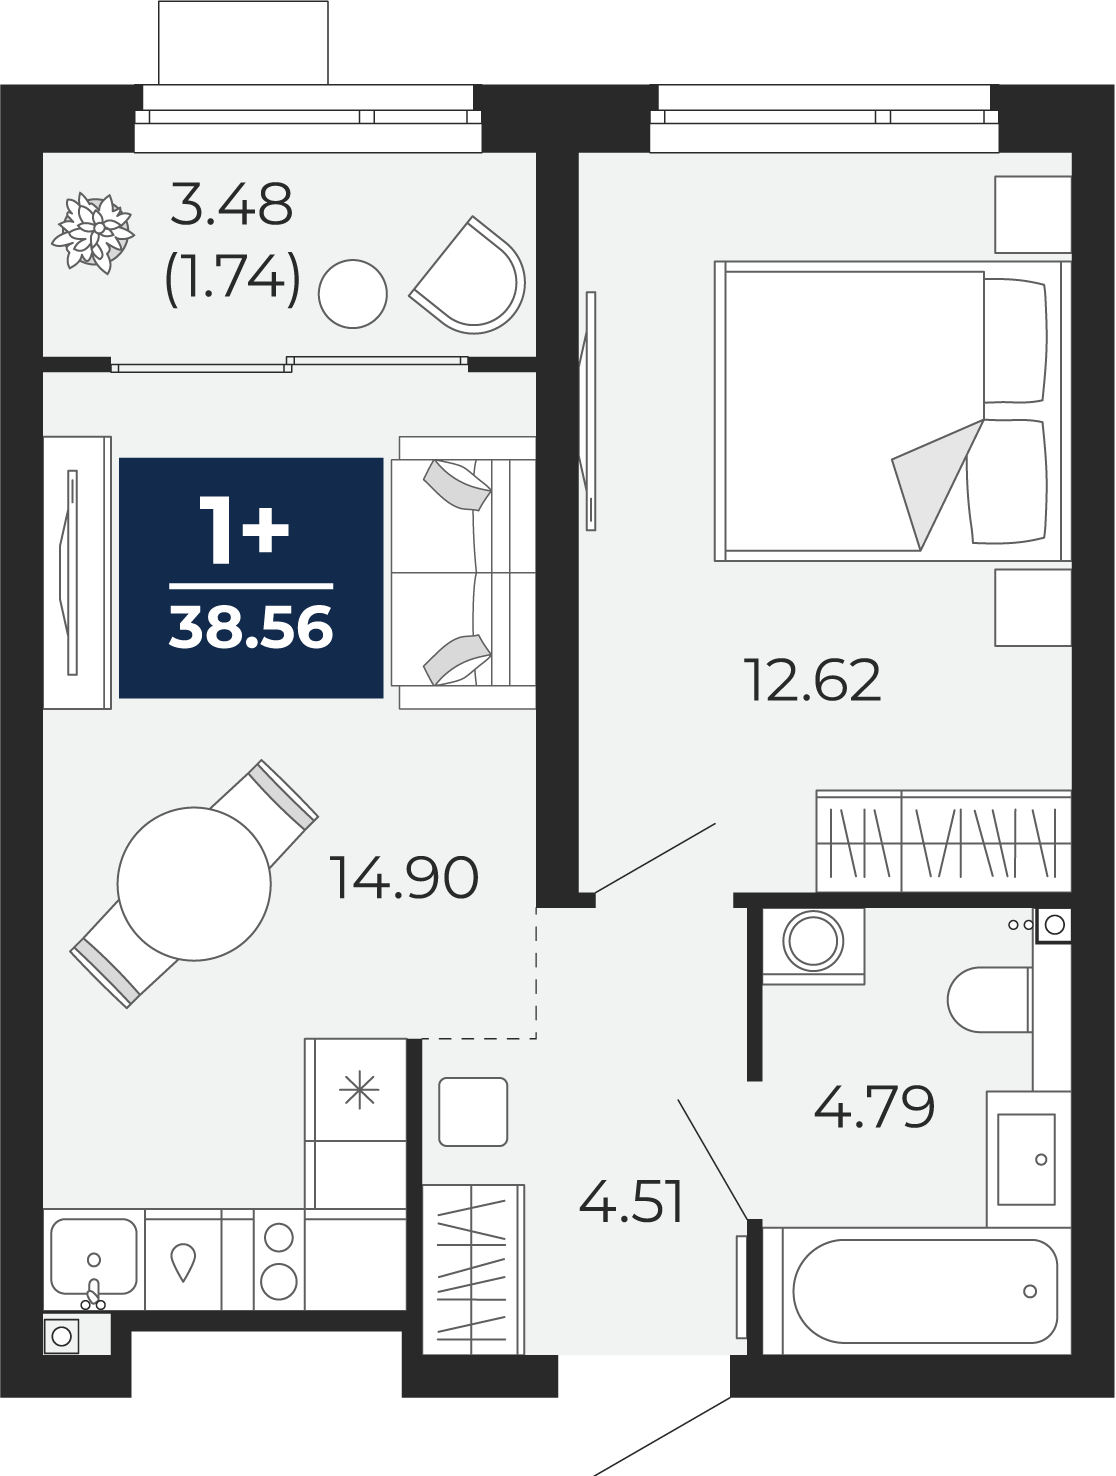 Квартира № 121, 1-комнатная, 38.56 кв. м, 2 этаж